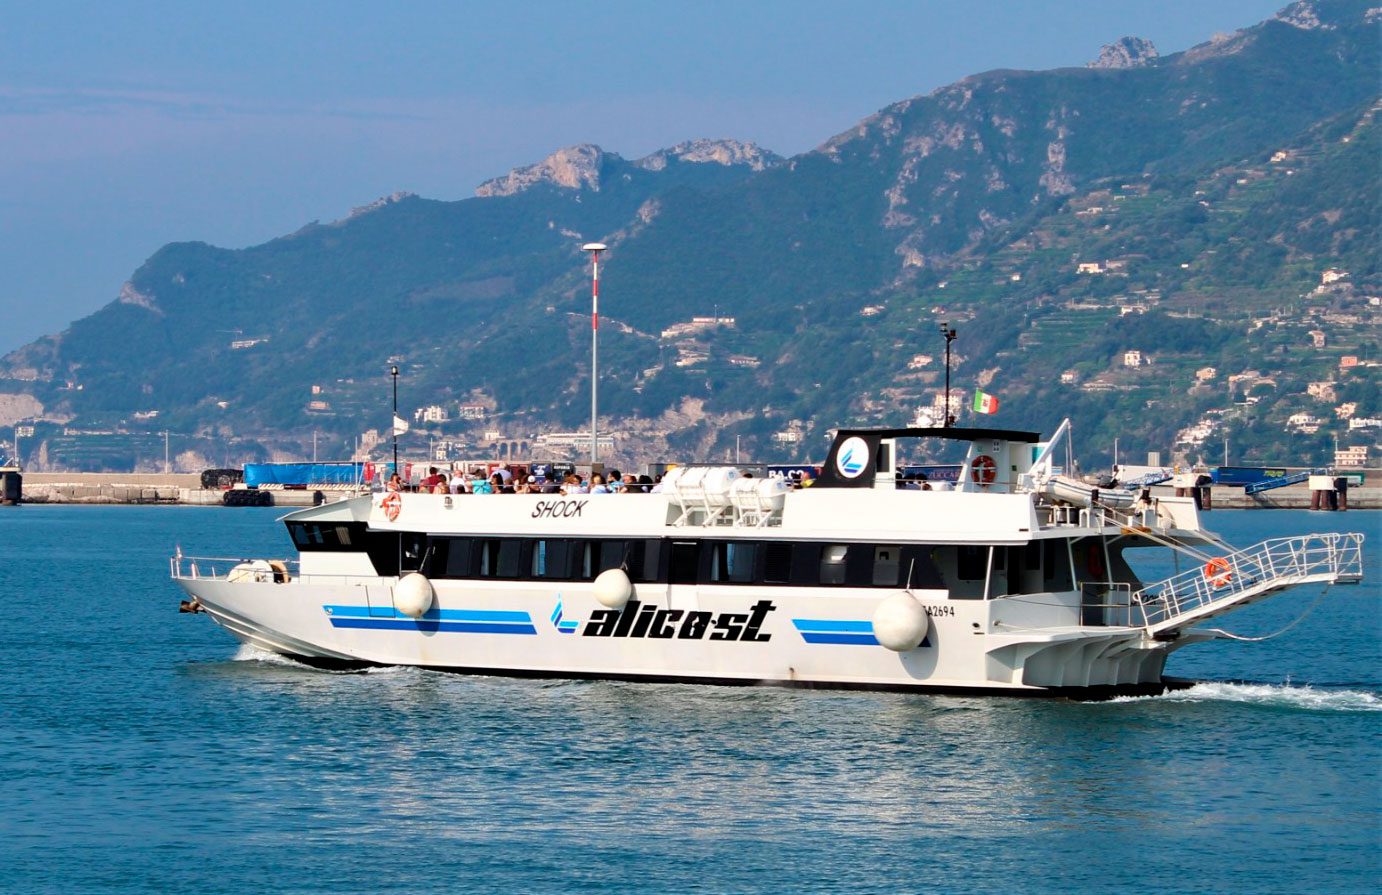 traghetto-salerno-isole-eolie-estate-2020-orari-prezzi